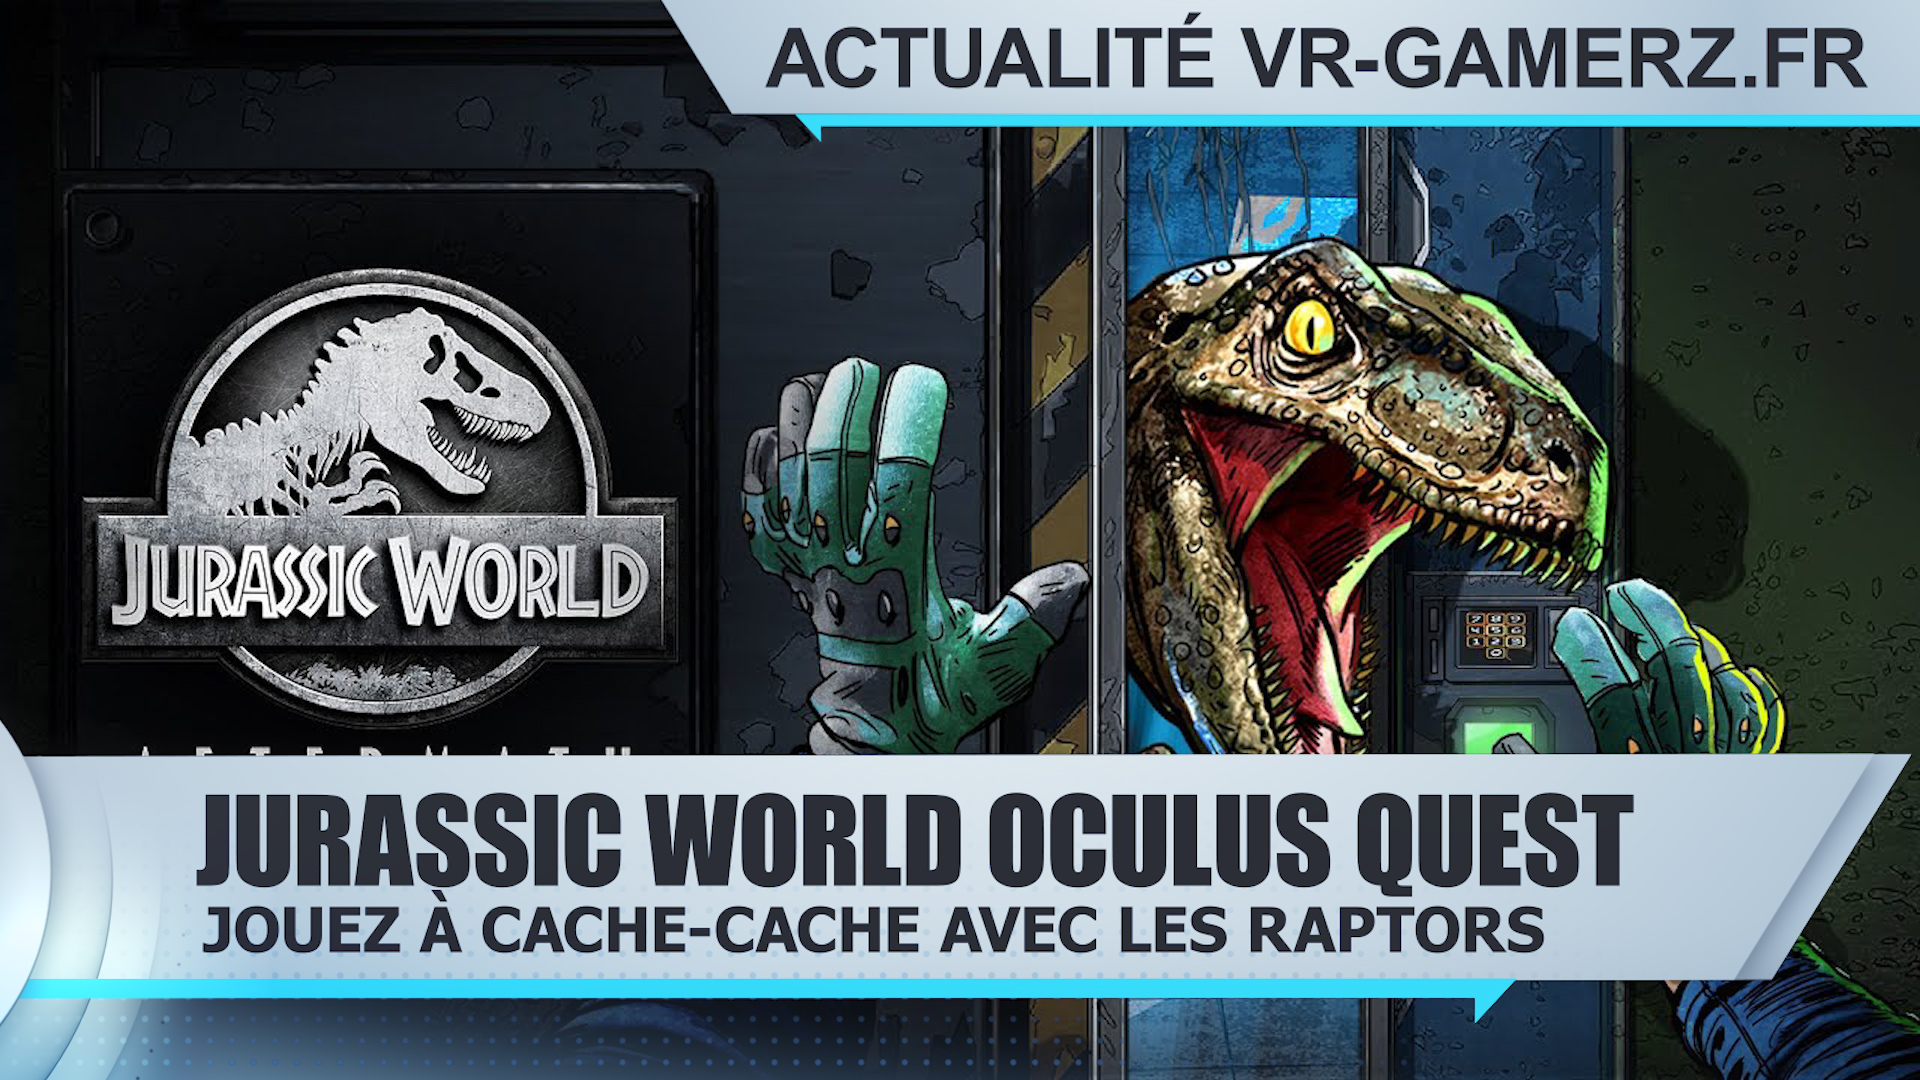 Jurassic World Oculus quest : Cache-cache avec les raptors